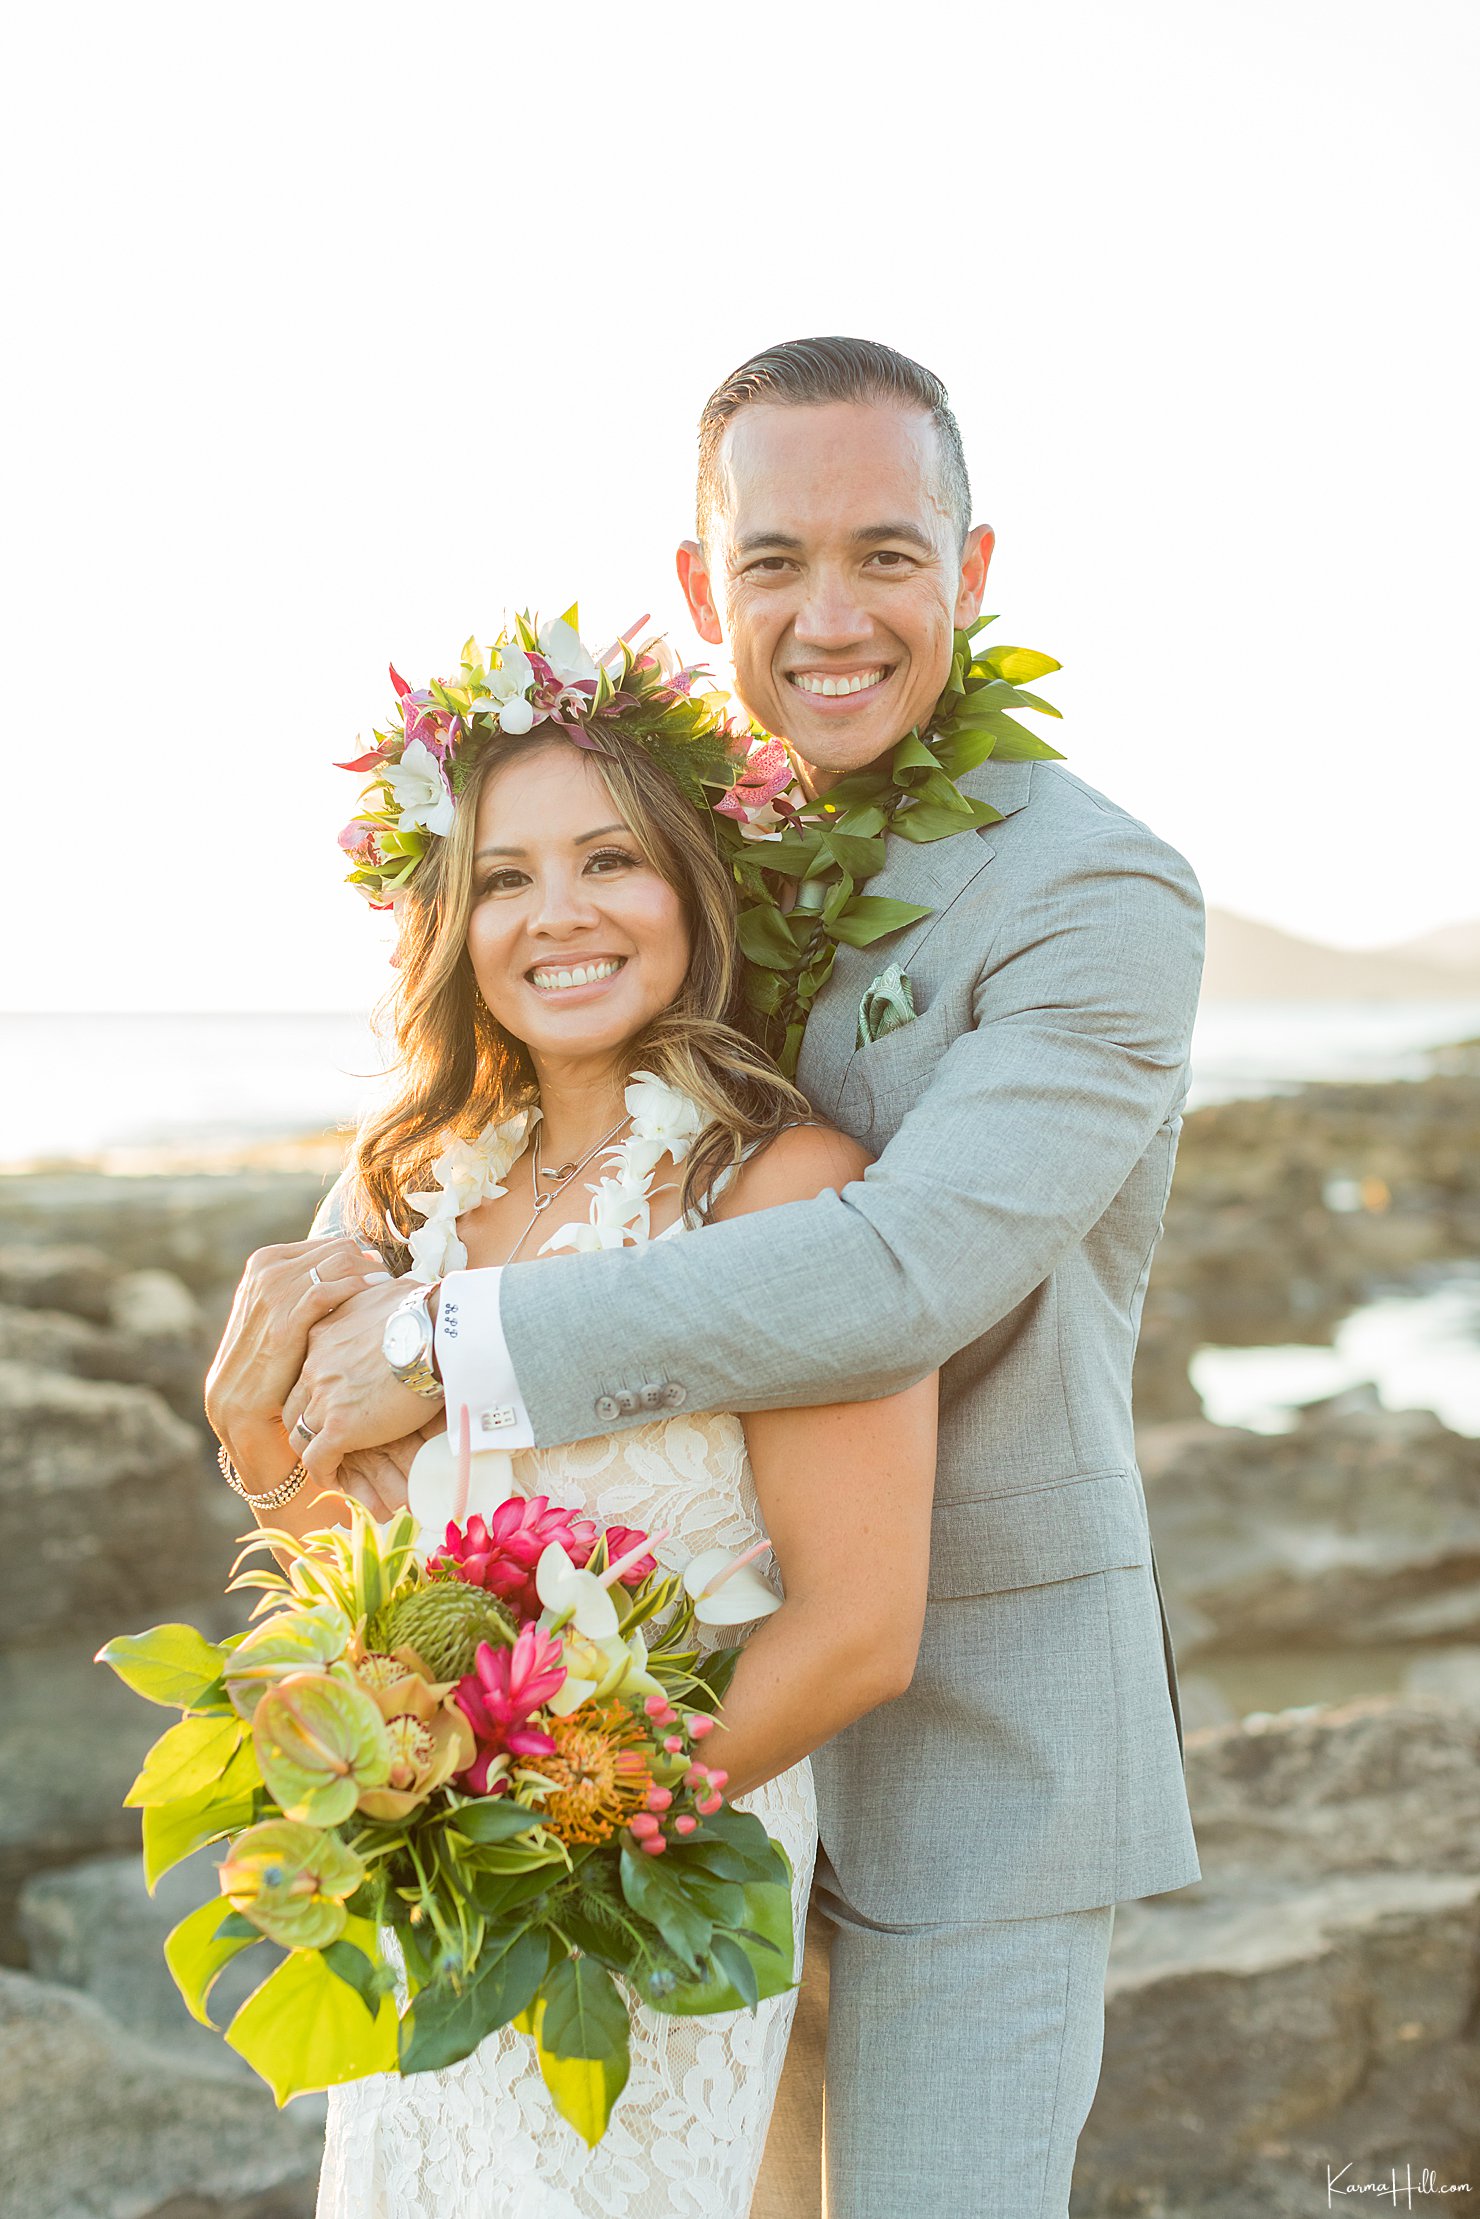 Oahu beach wedding packages